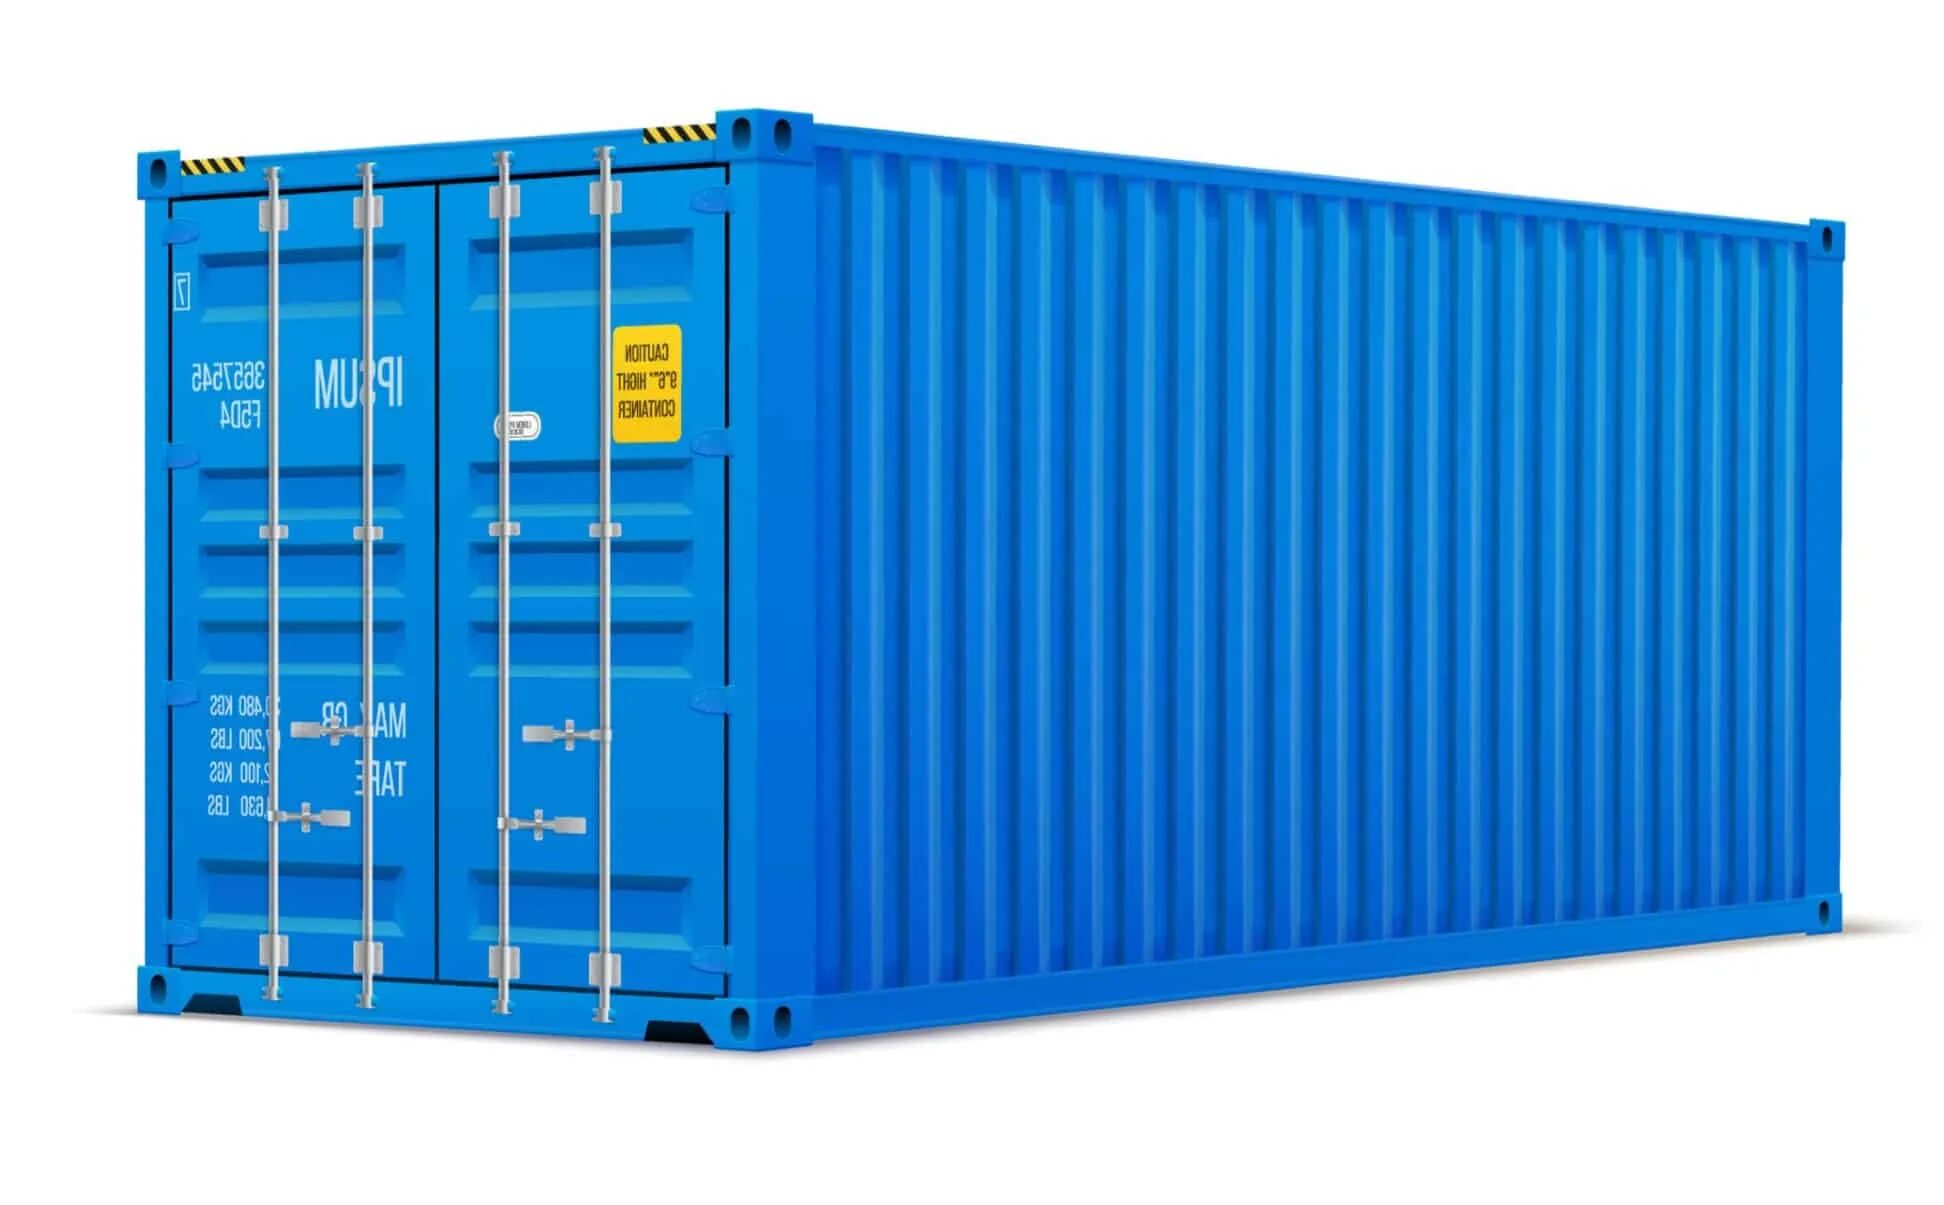 Контейнер 20dc новый. 40-Ка футовый High Cube контейнер увеличенной вместимости. Морской контейнер 40 футов HC, DC. Контейнер 20dc hlxu3340109. Морские контейнеры россия